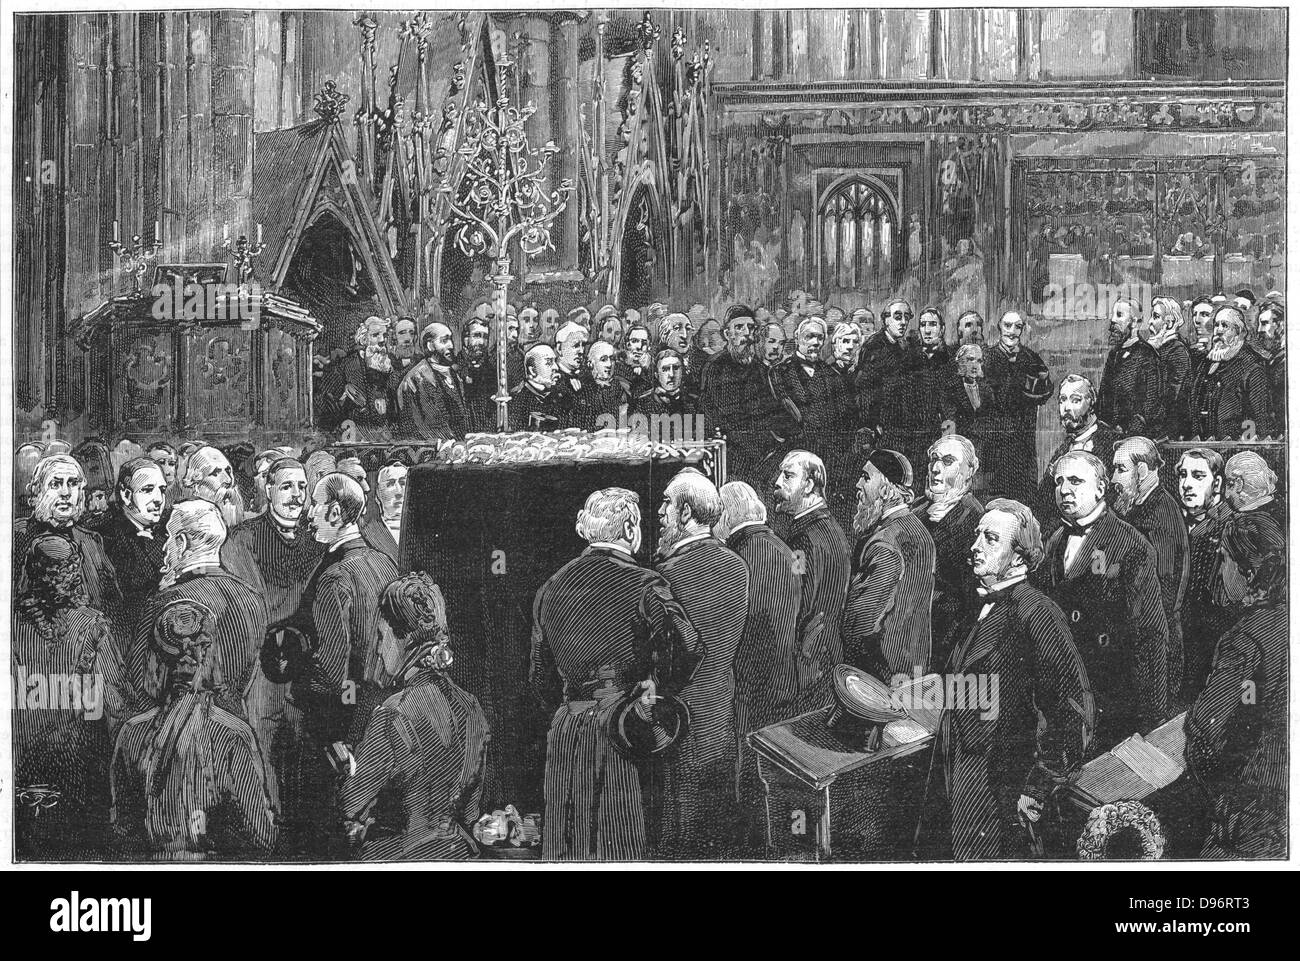 Charles Robert Darwin (1809-1882), englischer Naturforscher. Evolution durch natürliche Selektion. Darwin's Beerdigung in der Westminster Abbey, aus 'Grafik', London, 6. Mai 1882. Gravur Stockfoto